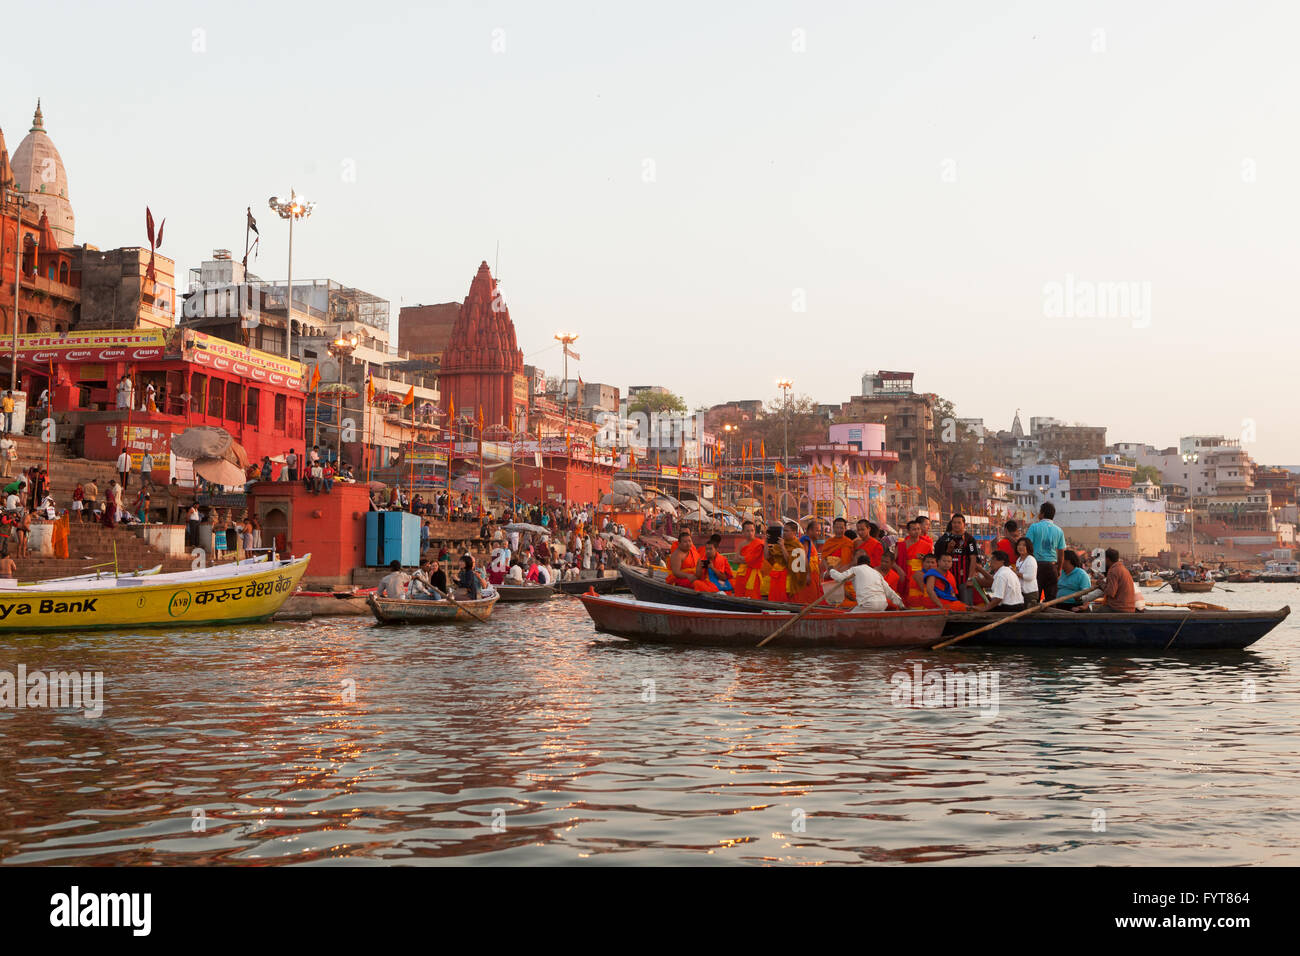 L'hindouisme et le bouddhisme ont des similitudes dans le Gange de la culture hindoue et bouddhiste, les gens vivent, prier ensemble autour de Ganges river Banque D'Images